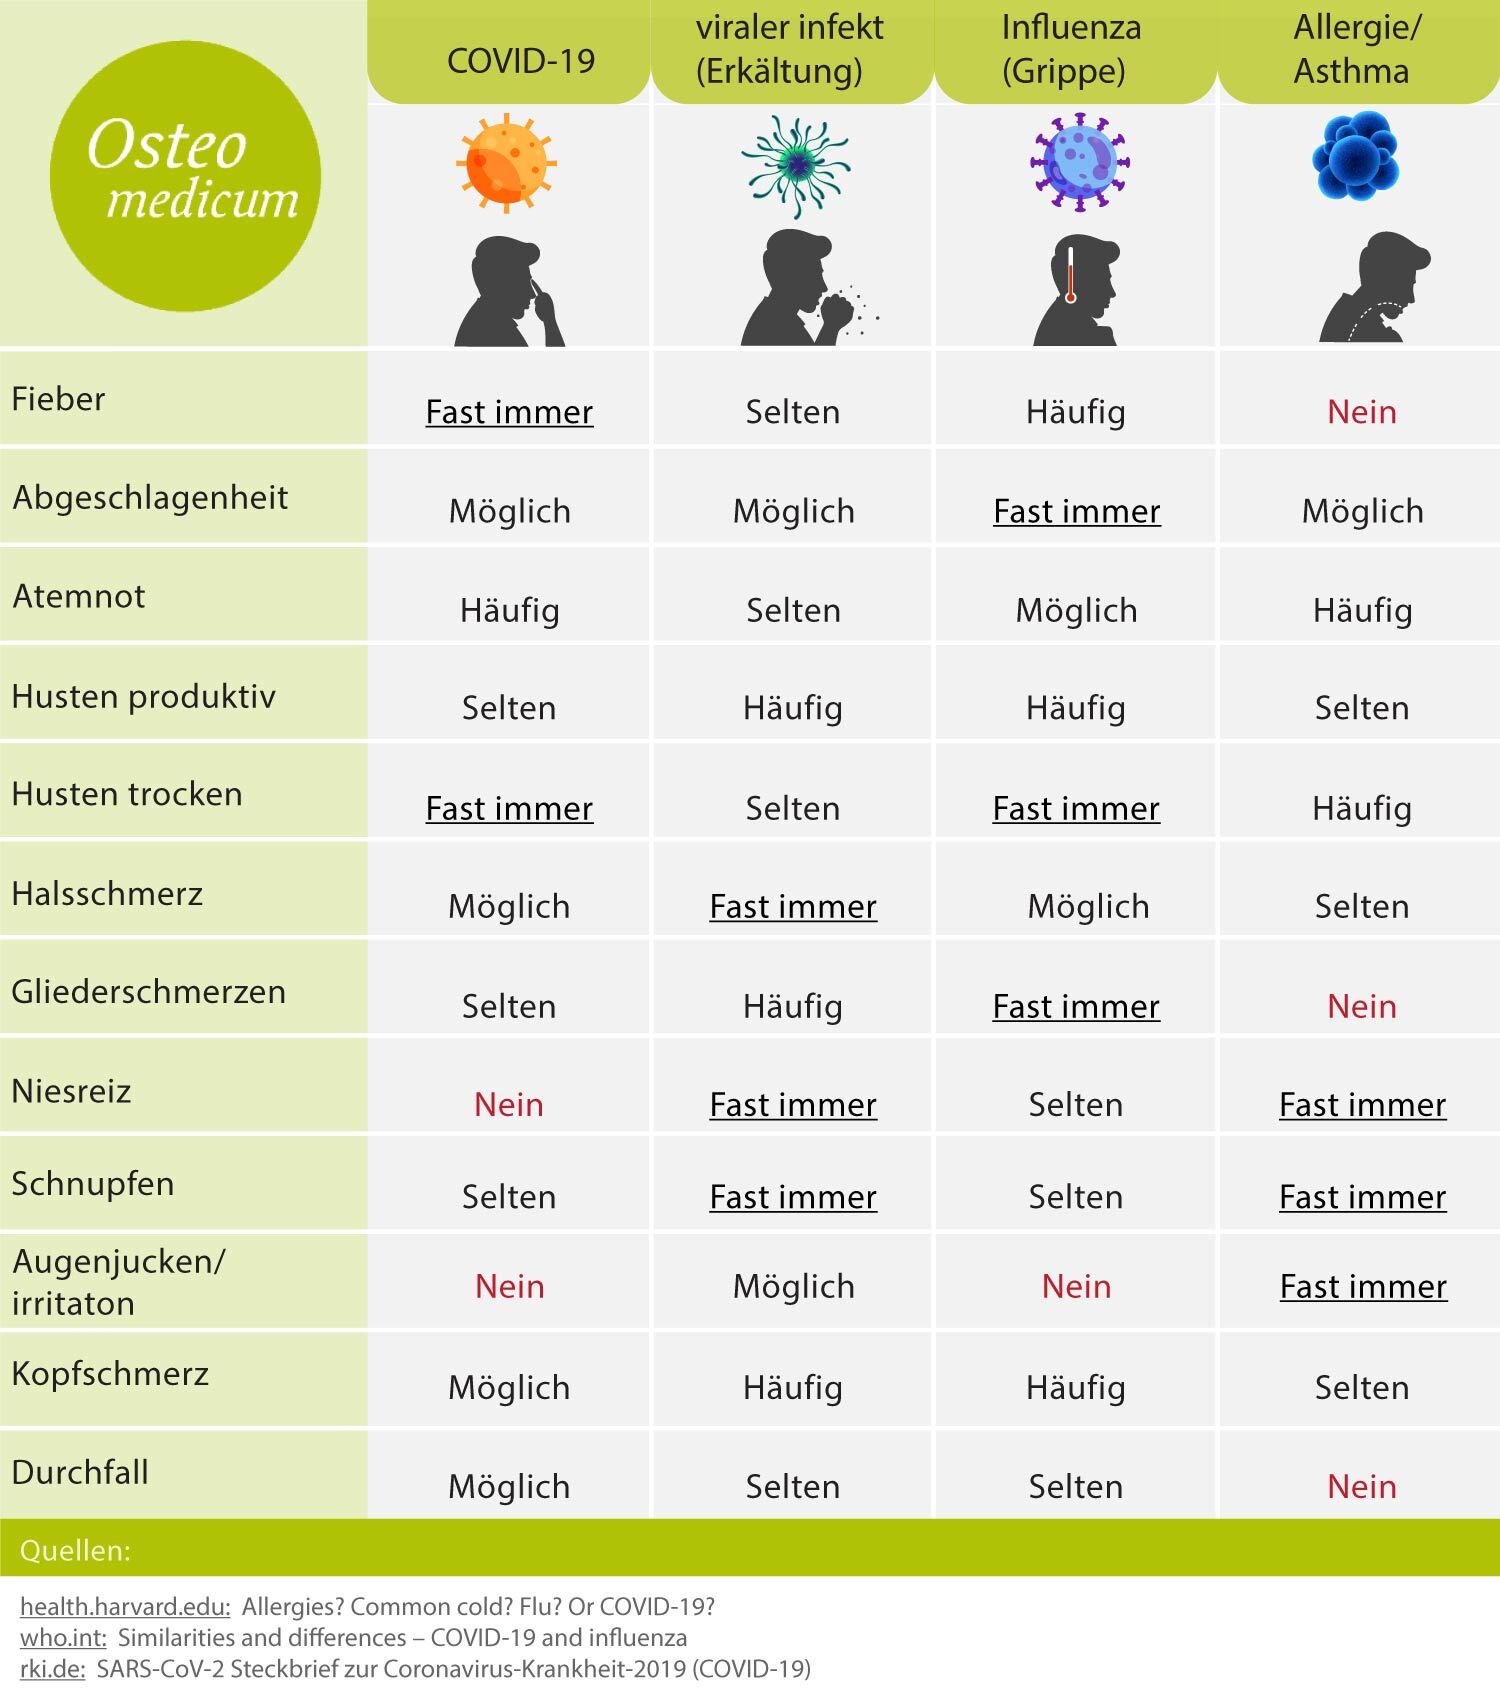 Die Unterschiedlichen Symptome einer COVID-19 Erkrankung im Vergleich mit Symptomen einer Erkältung, Influenza und Allergie